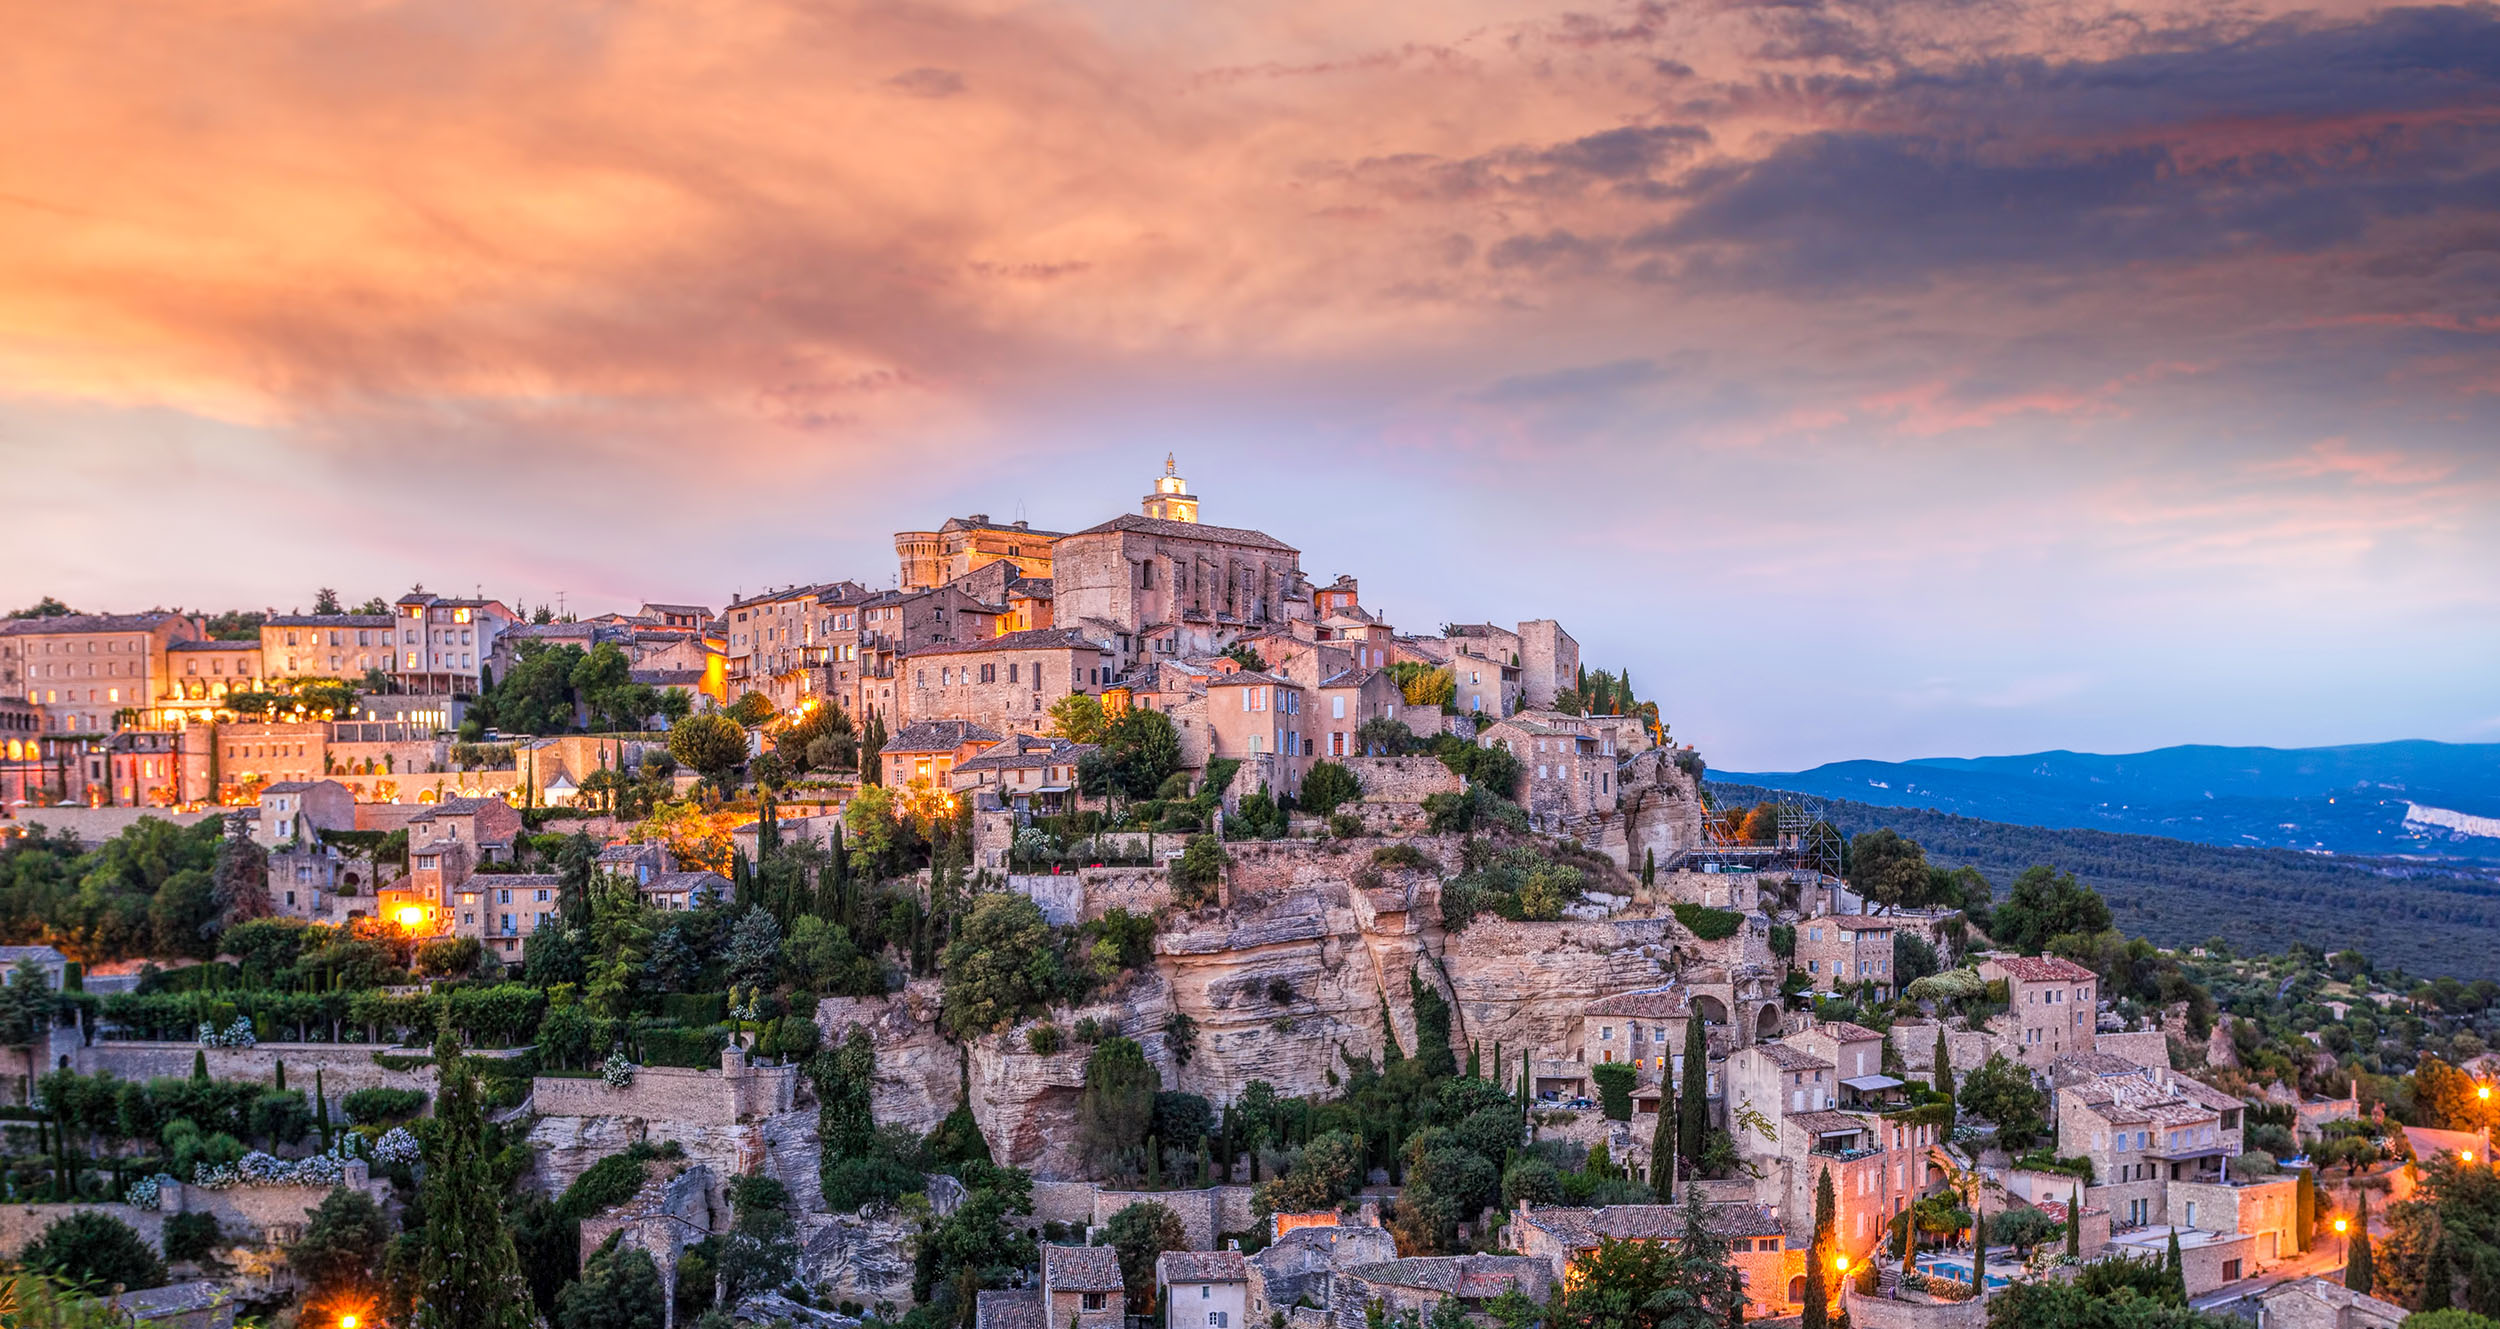 Die Provence zeichnet sich durch ihre unglaubliche Vielfältigkeit aus. Von der Côte d’Azur bis hinauf in die französischen Voralpen stößt man im Süden Frankreichs auf weite Lavendelfelder und steile Felsschluchten, pittoreske Bergdörfer und schicke Küstenstädte.